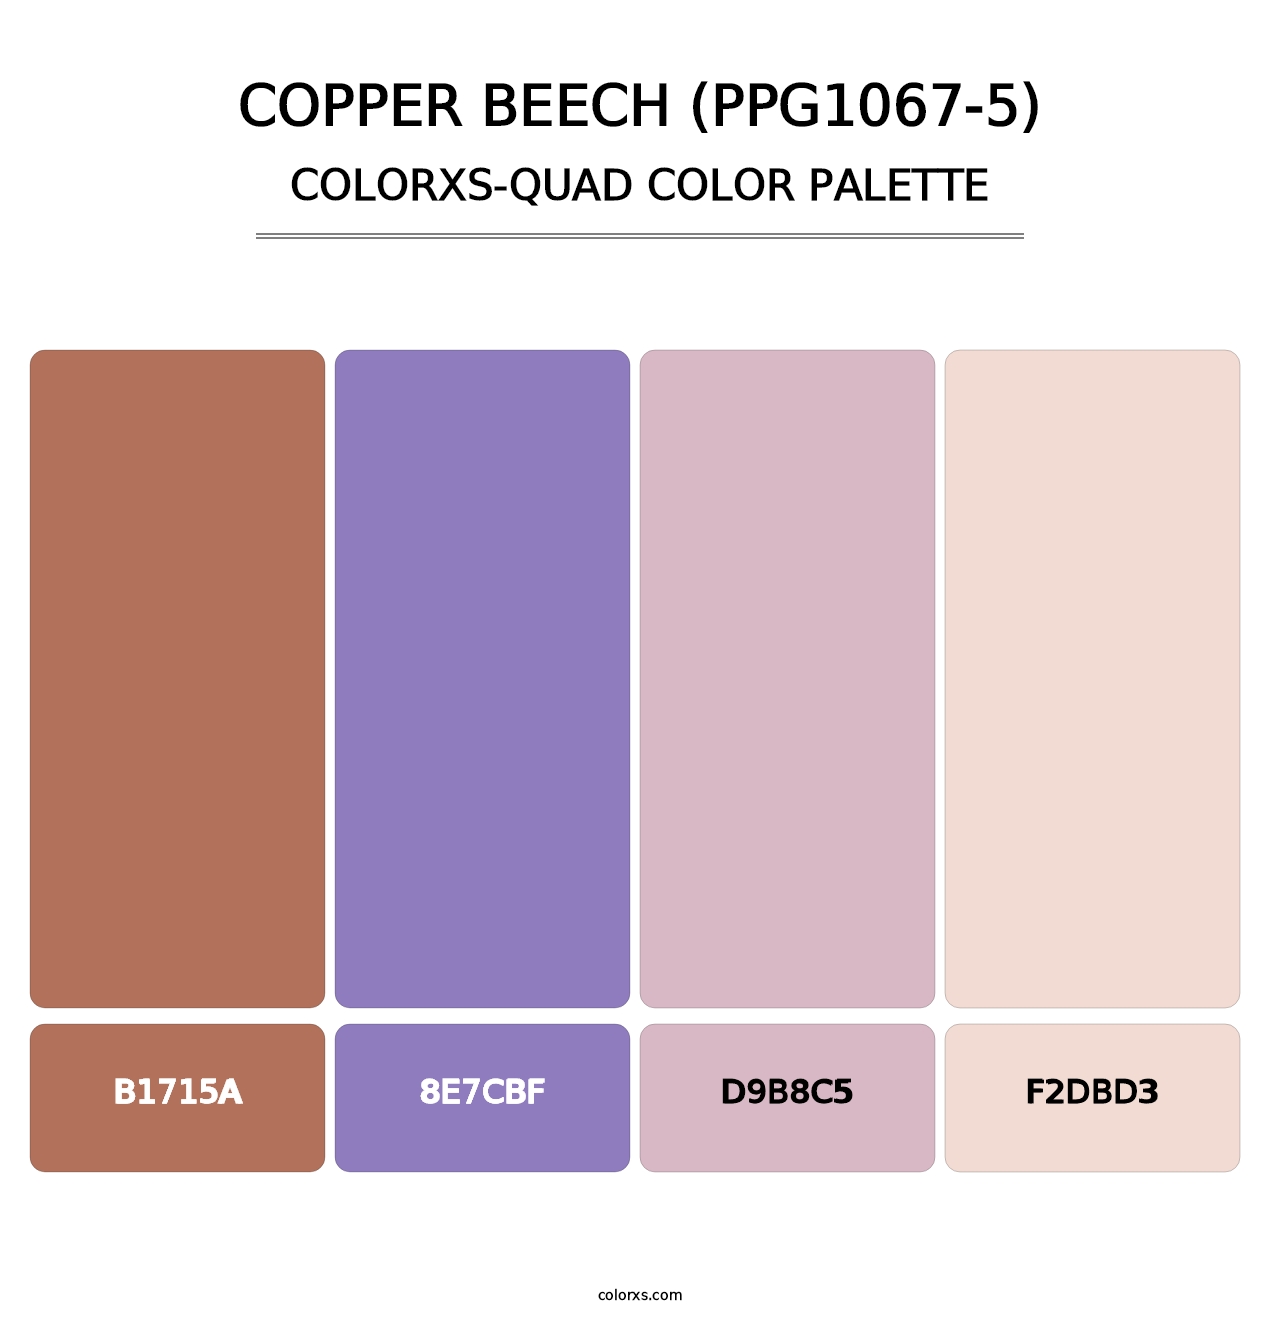 Copper Beech (PPG1067-5) - Colorxs Quad Palette